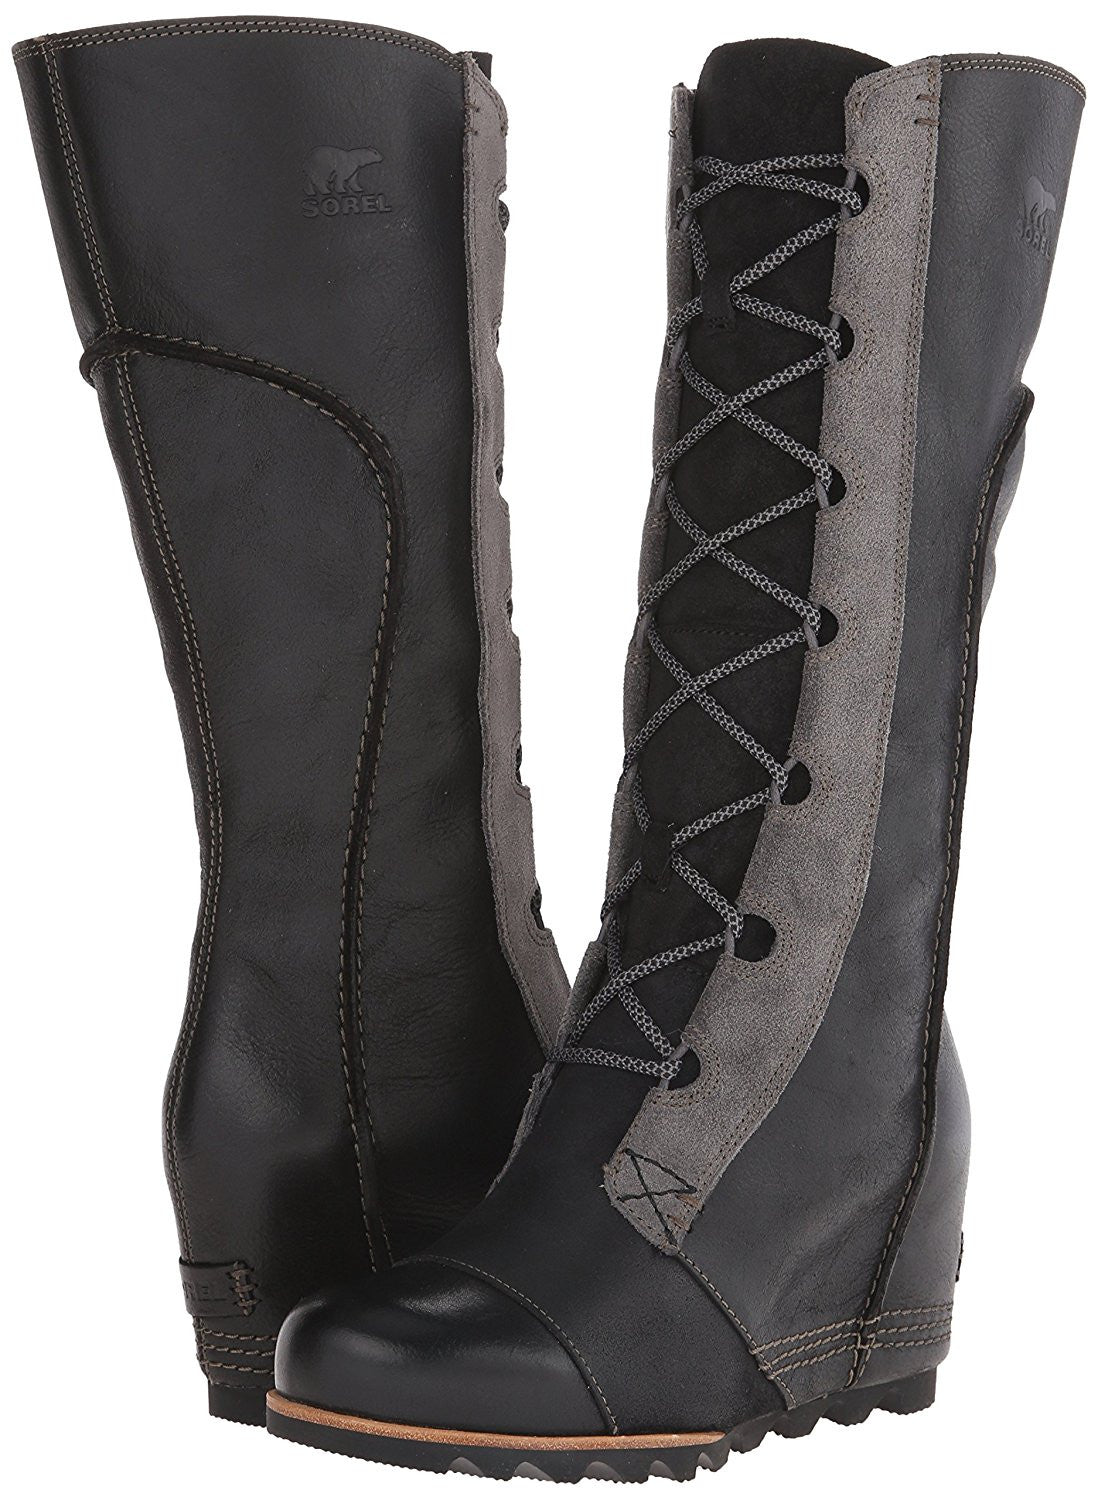 Tall Sorel Wedge Boots | lupon.gov.ph